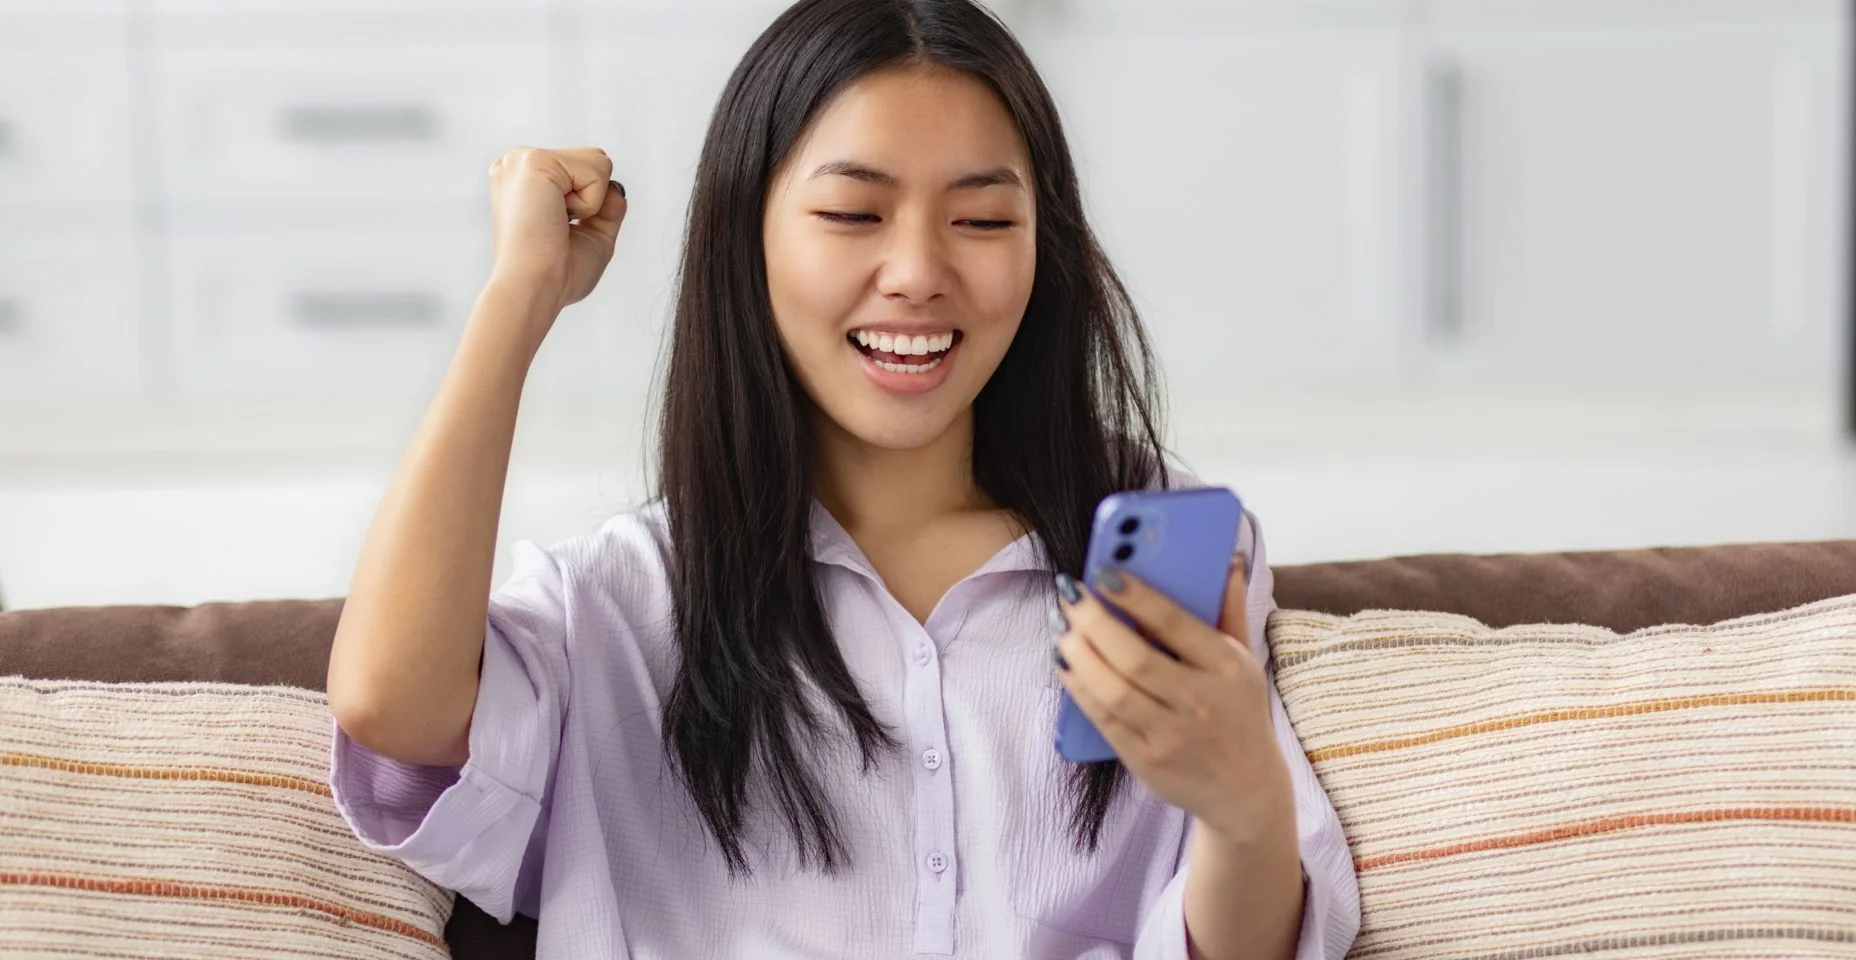 Animada jovem asiática feliz segurando o dispositivo de telefone inteligente, olhando para a tela do smartphone móvel gesticulando sim, ela recebeu boas notícias sentada no sofá em casa